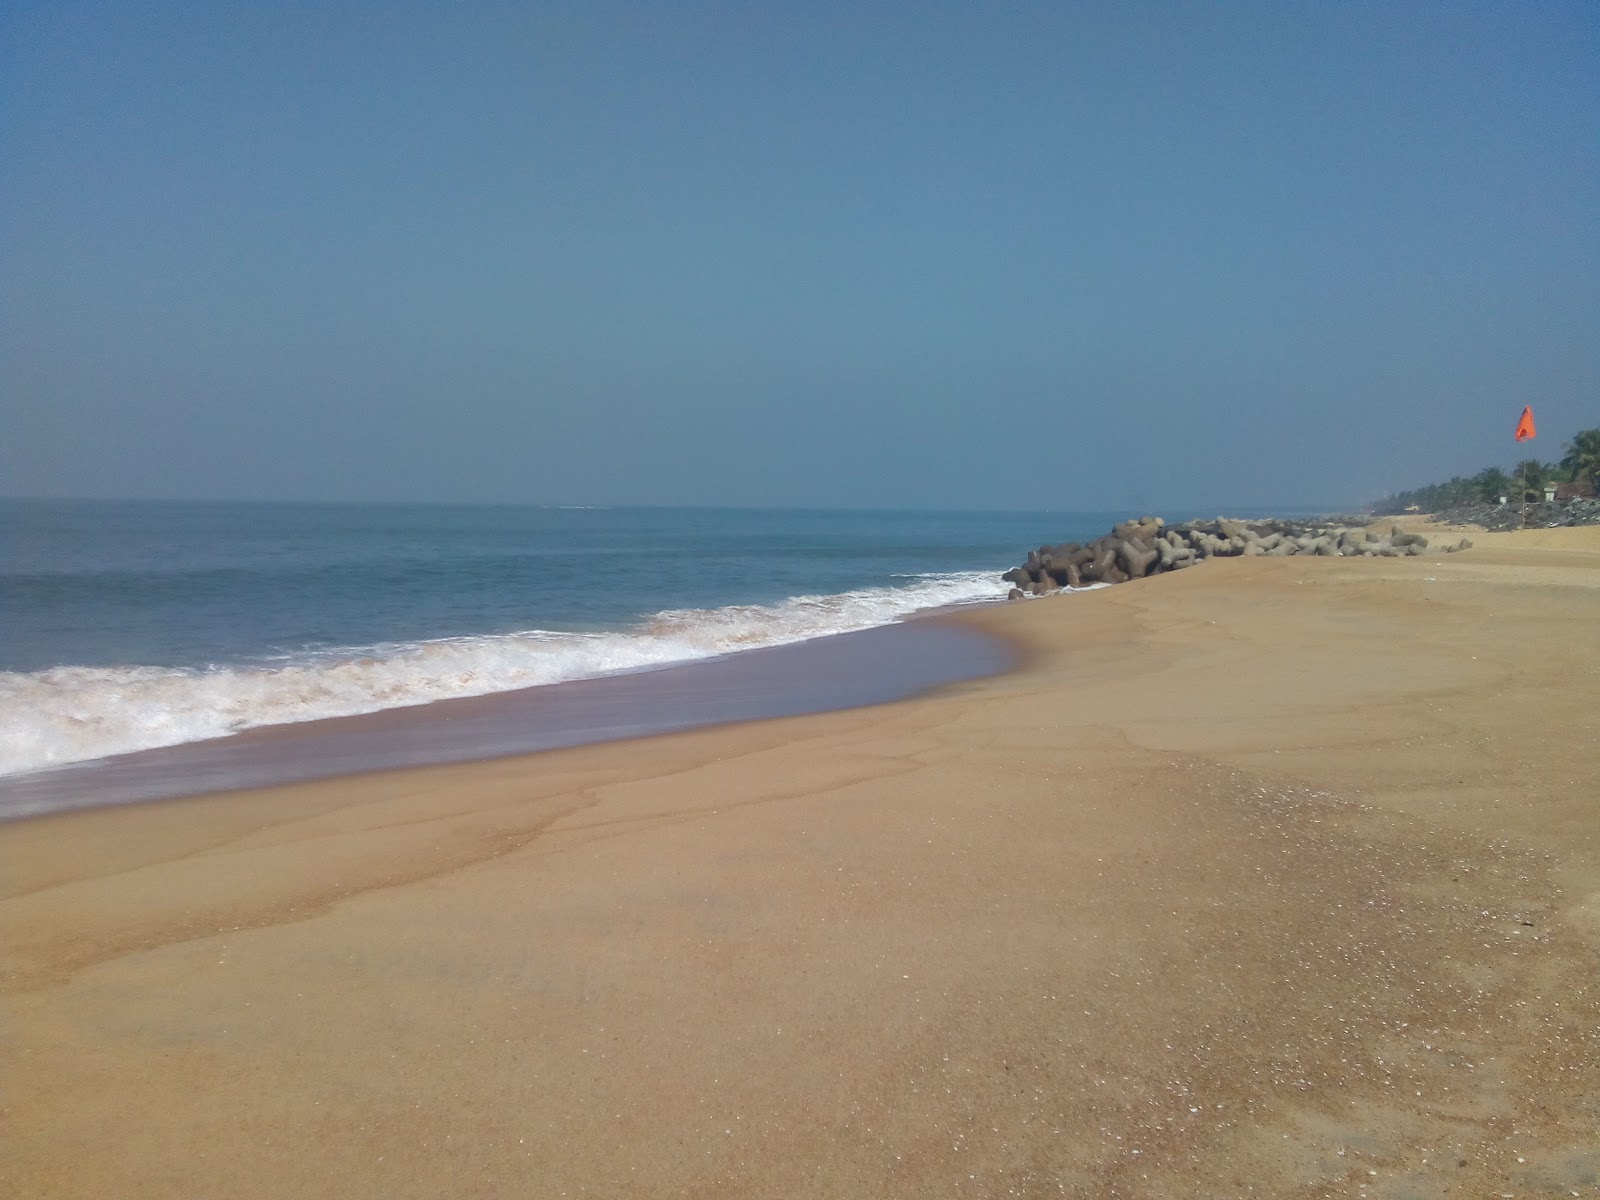 Ullal beach'in fotoğrafı parlak kum yüzey ile